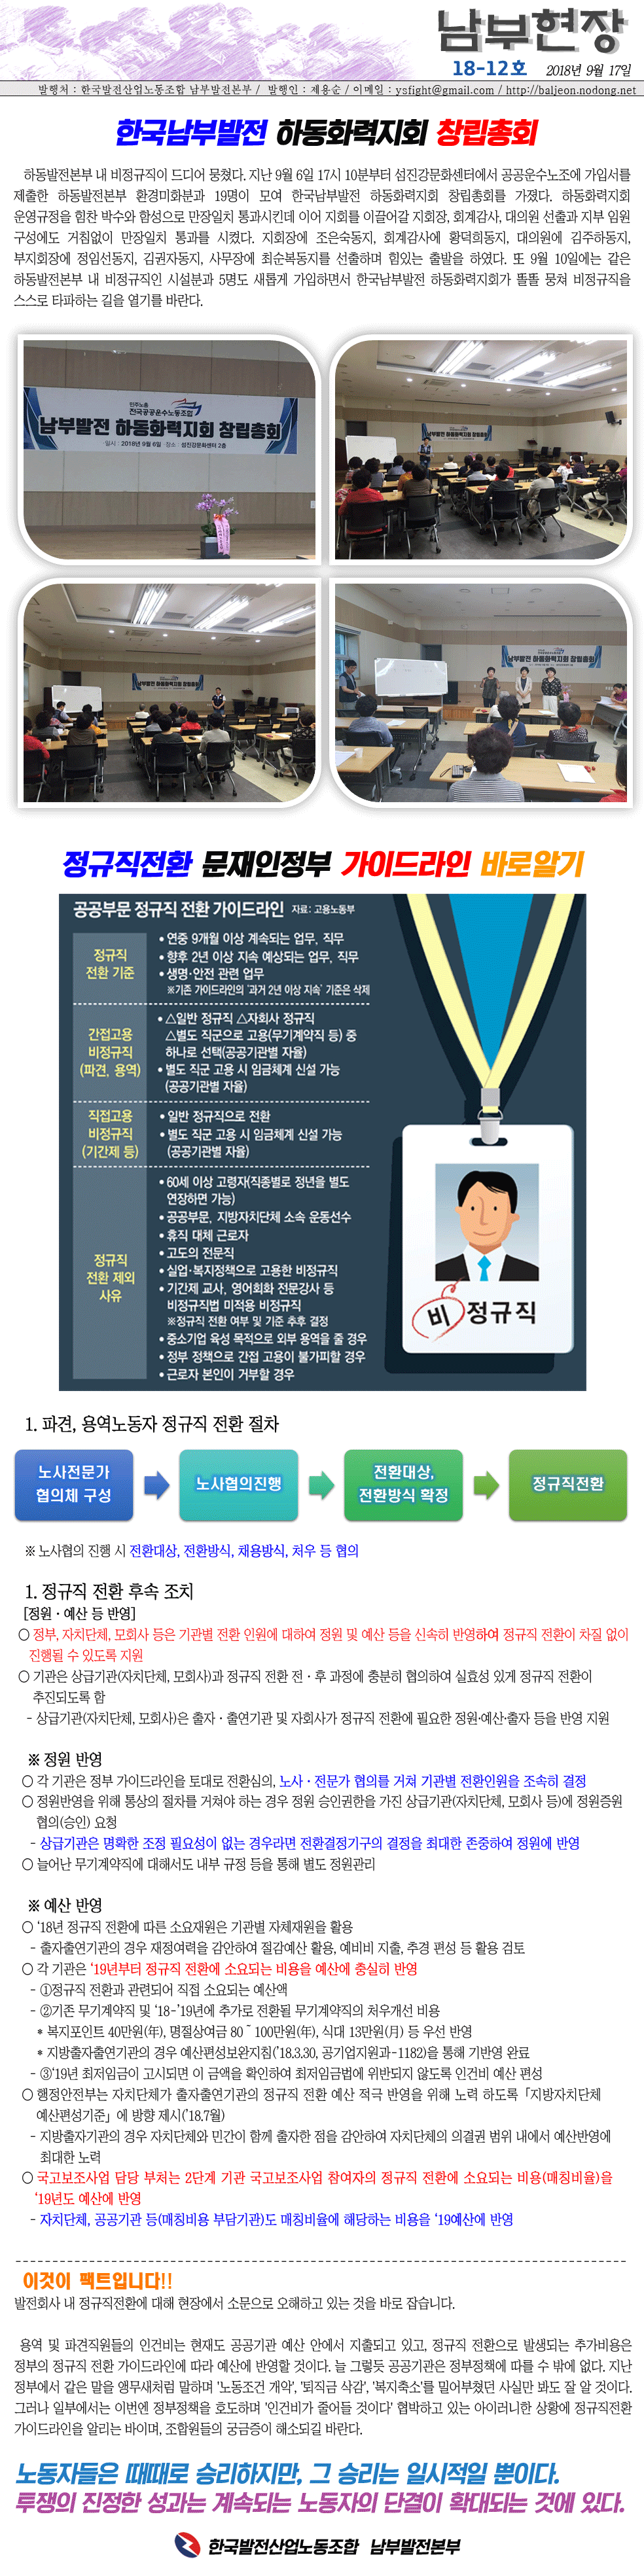 남부현장 18-12호(2018.09.17).gif